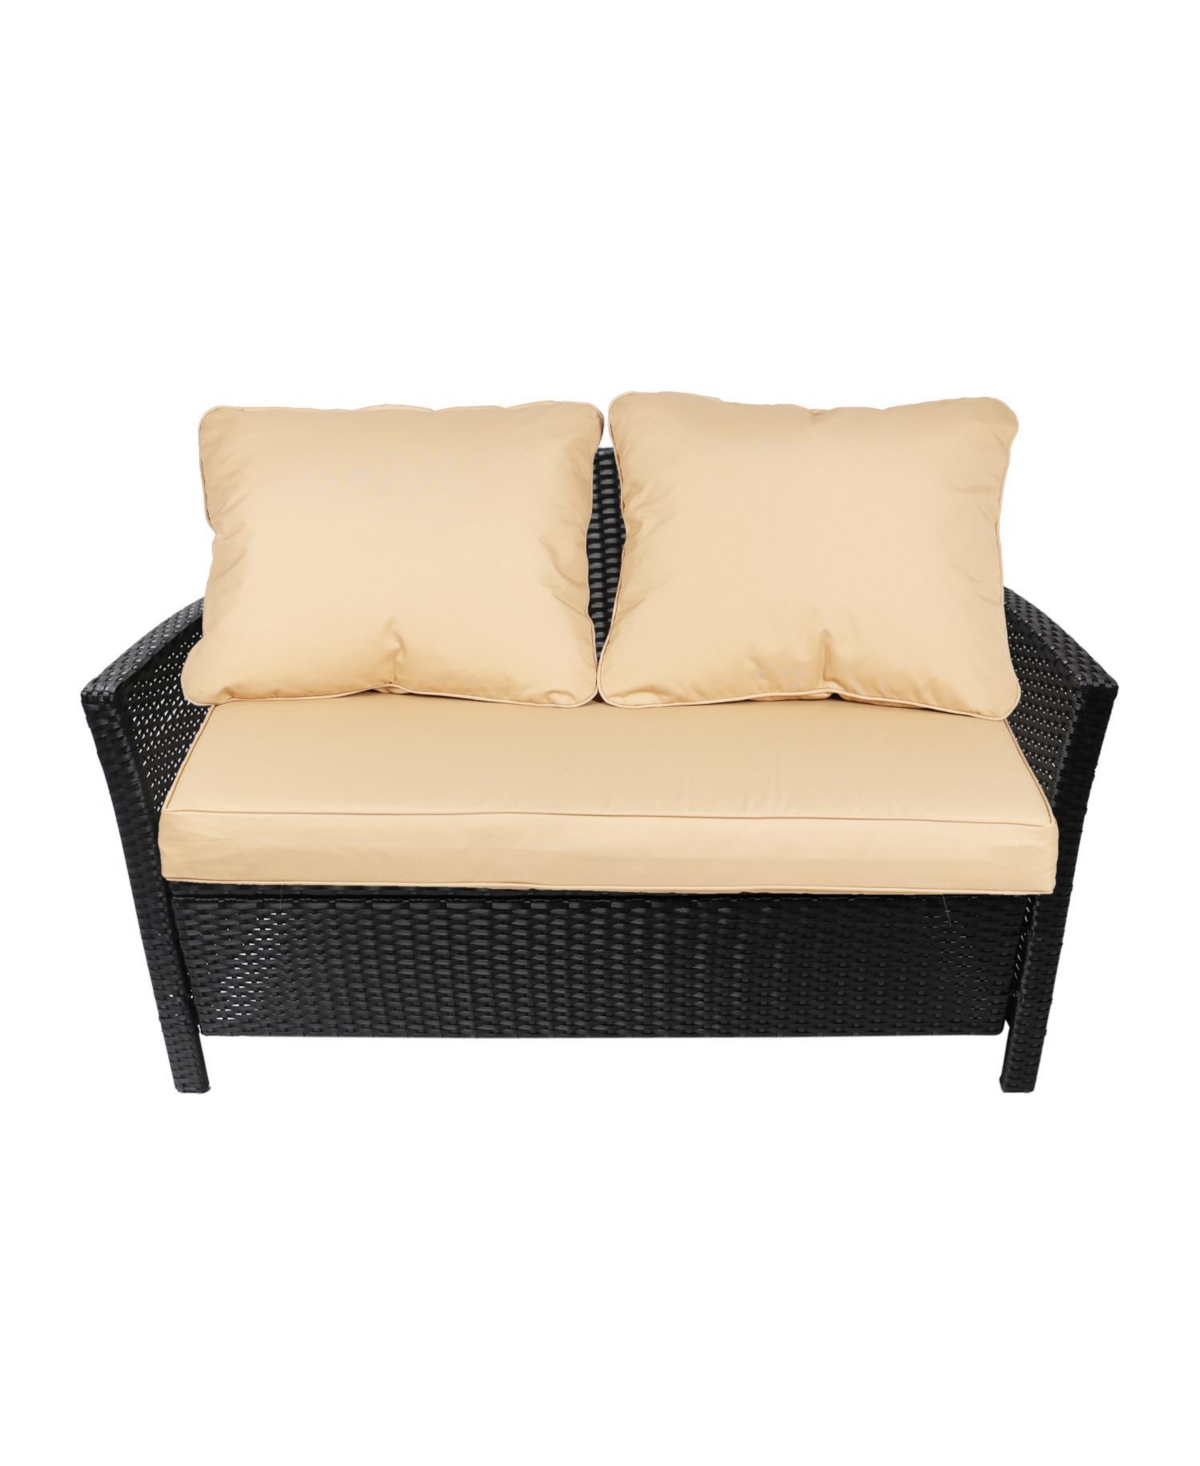 Patio Furniture Cushions 46.5L''x24.4W''x18.9H'' - Beige